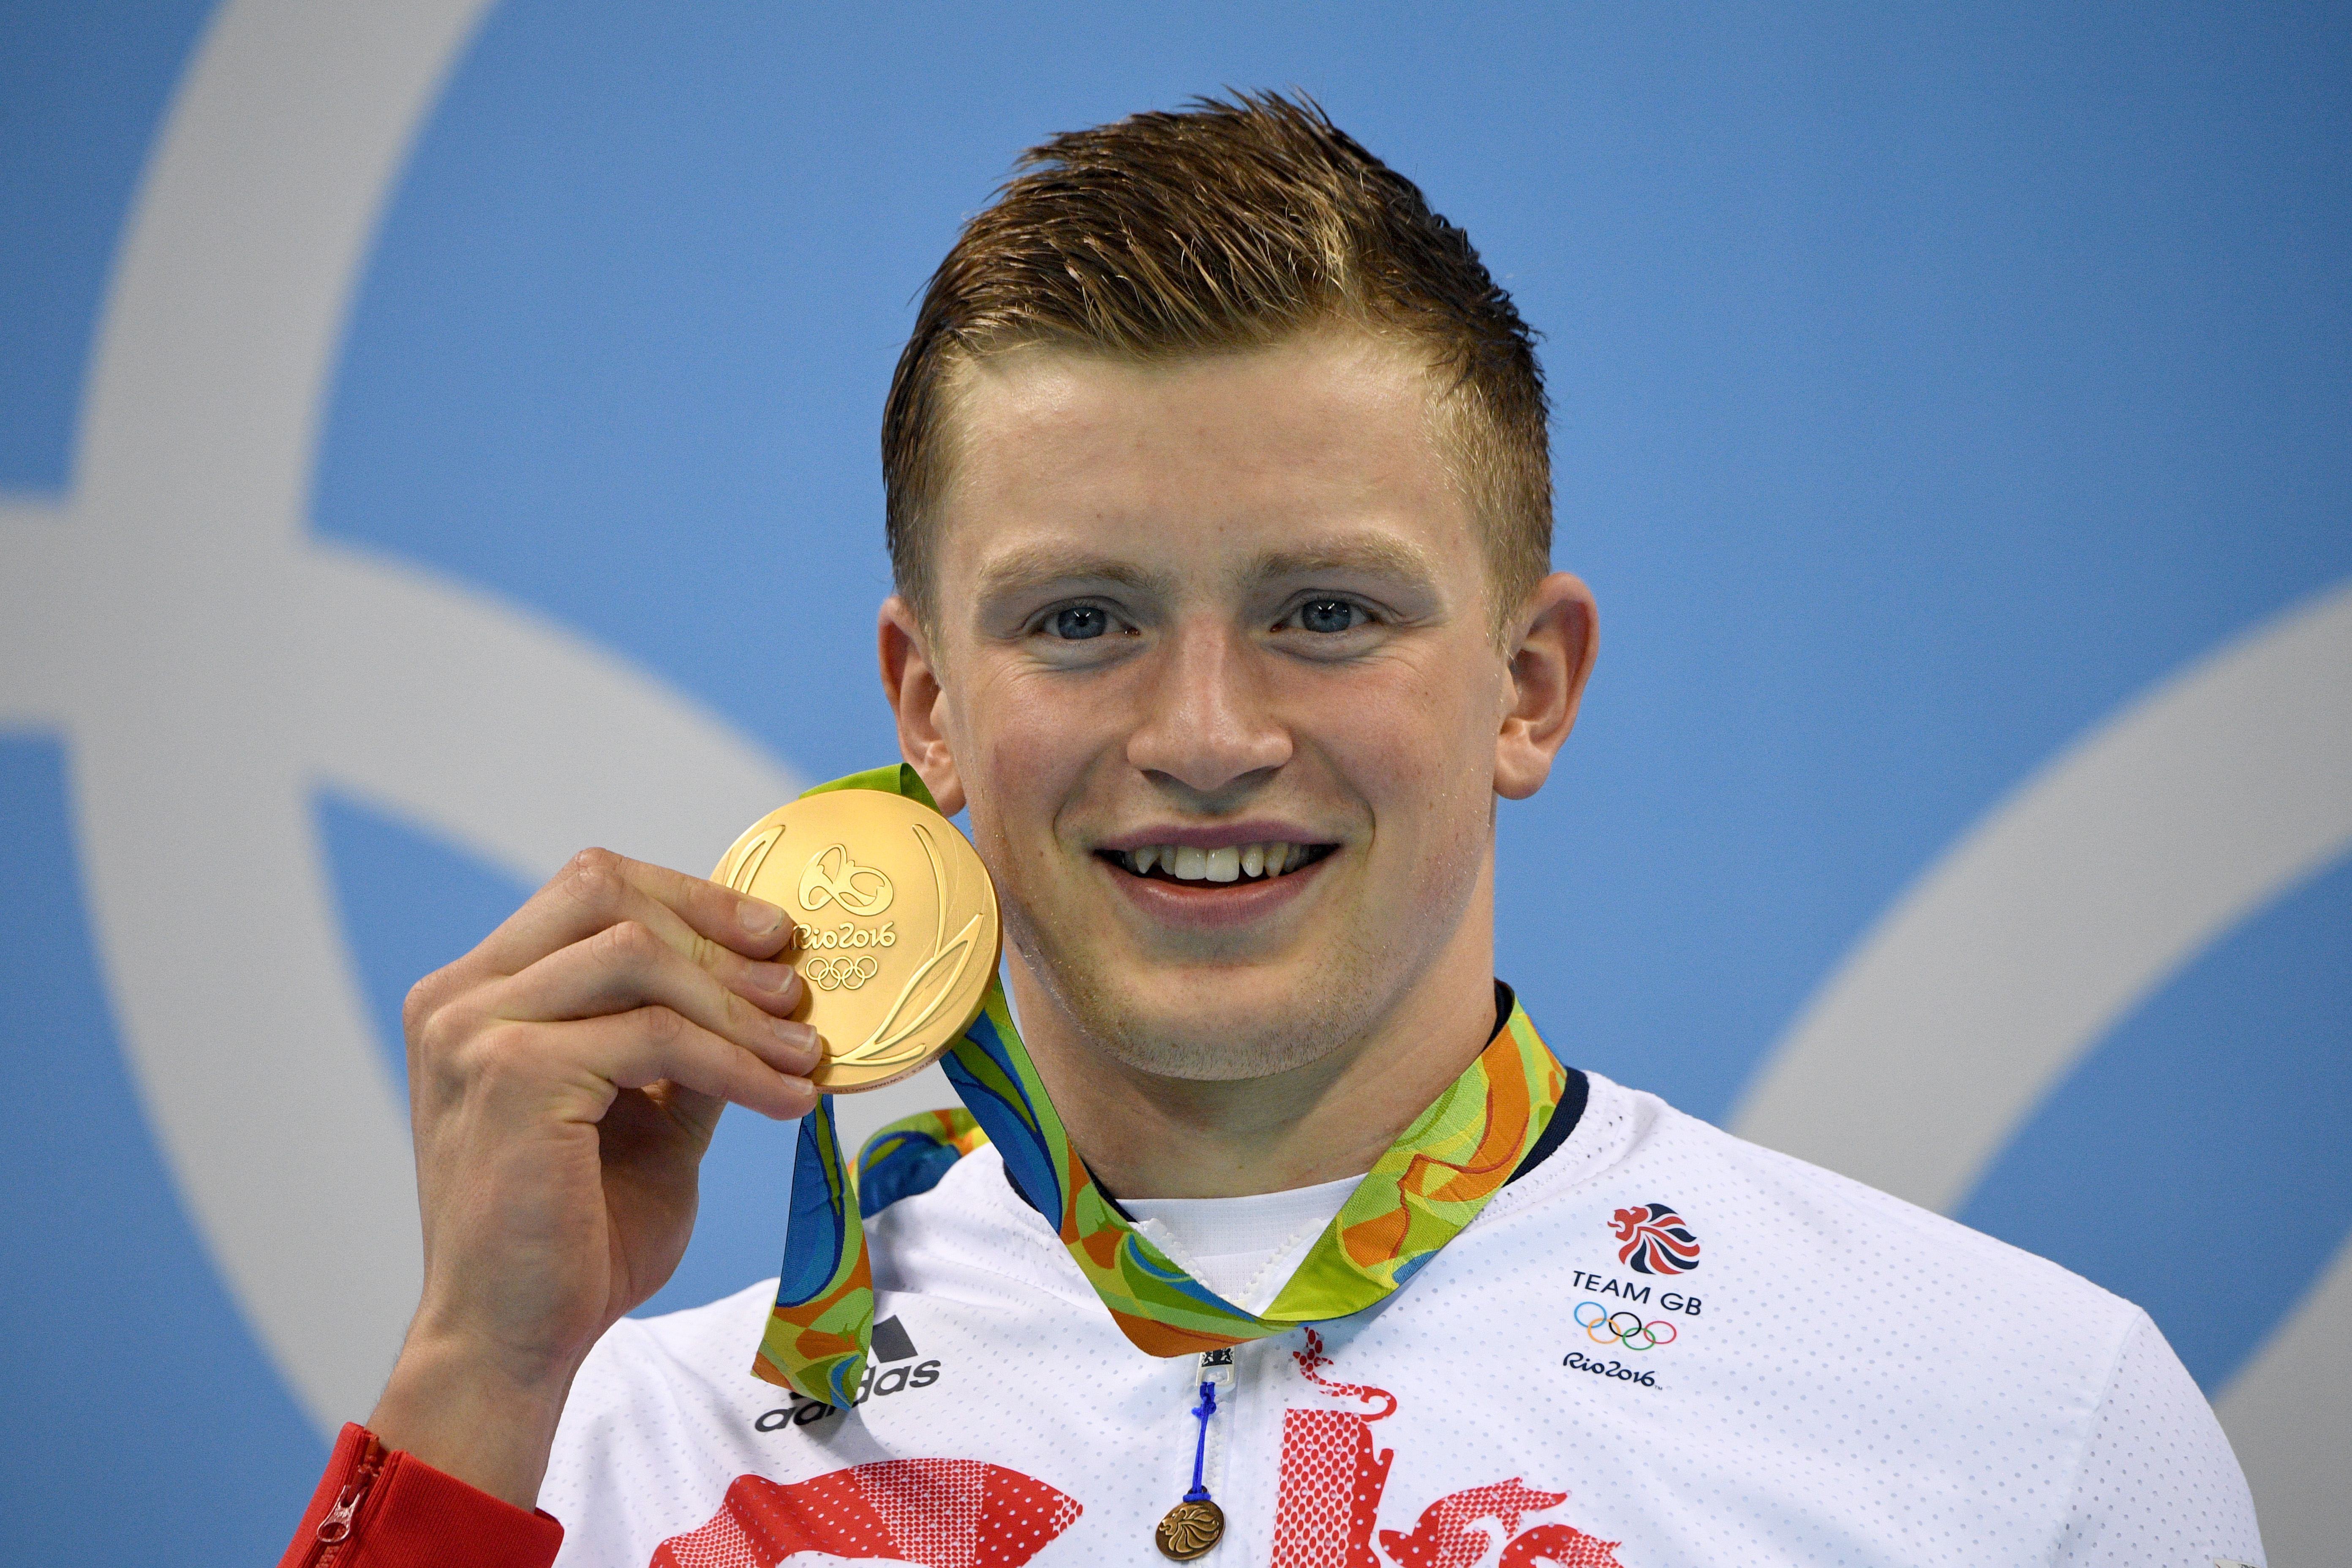 Adam ganó dos medallas de oro en los Juegos Olímpicos de 2016